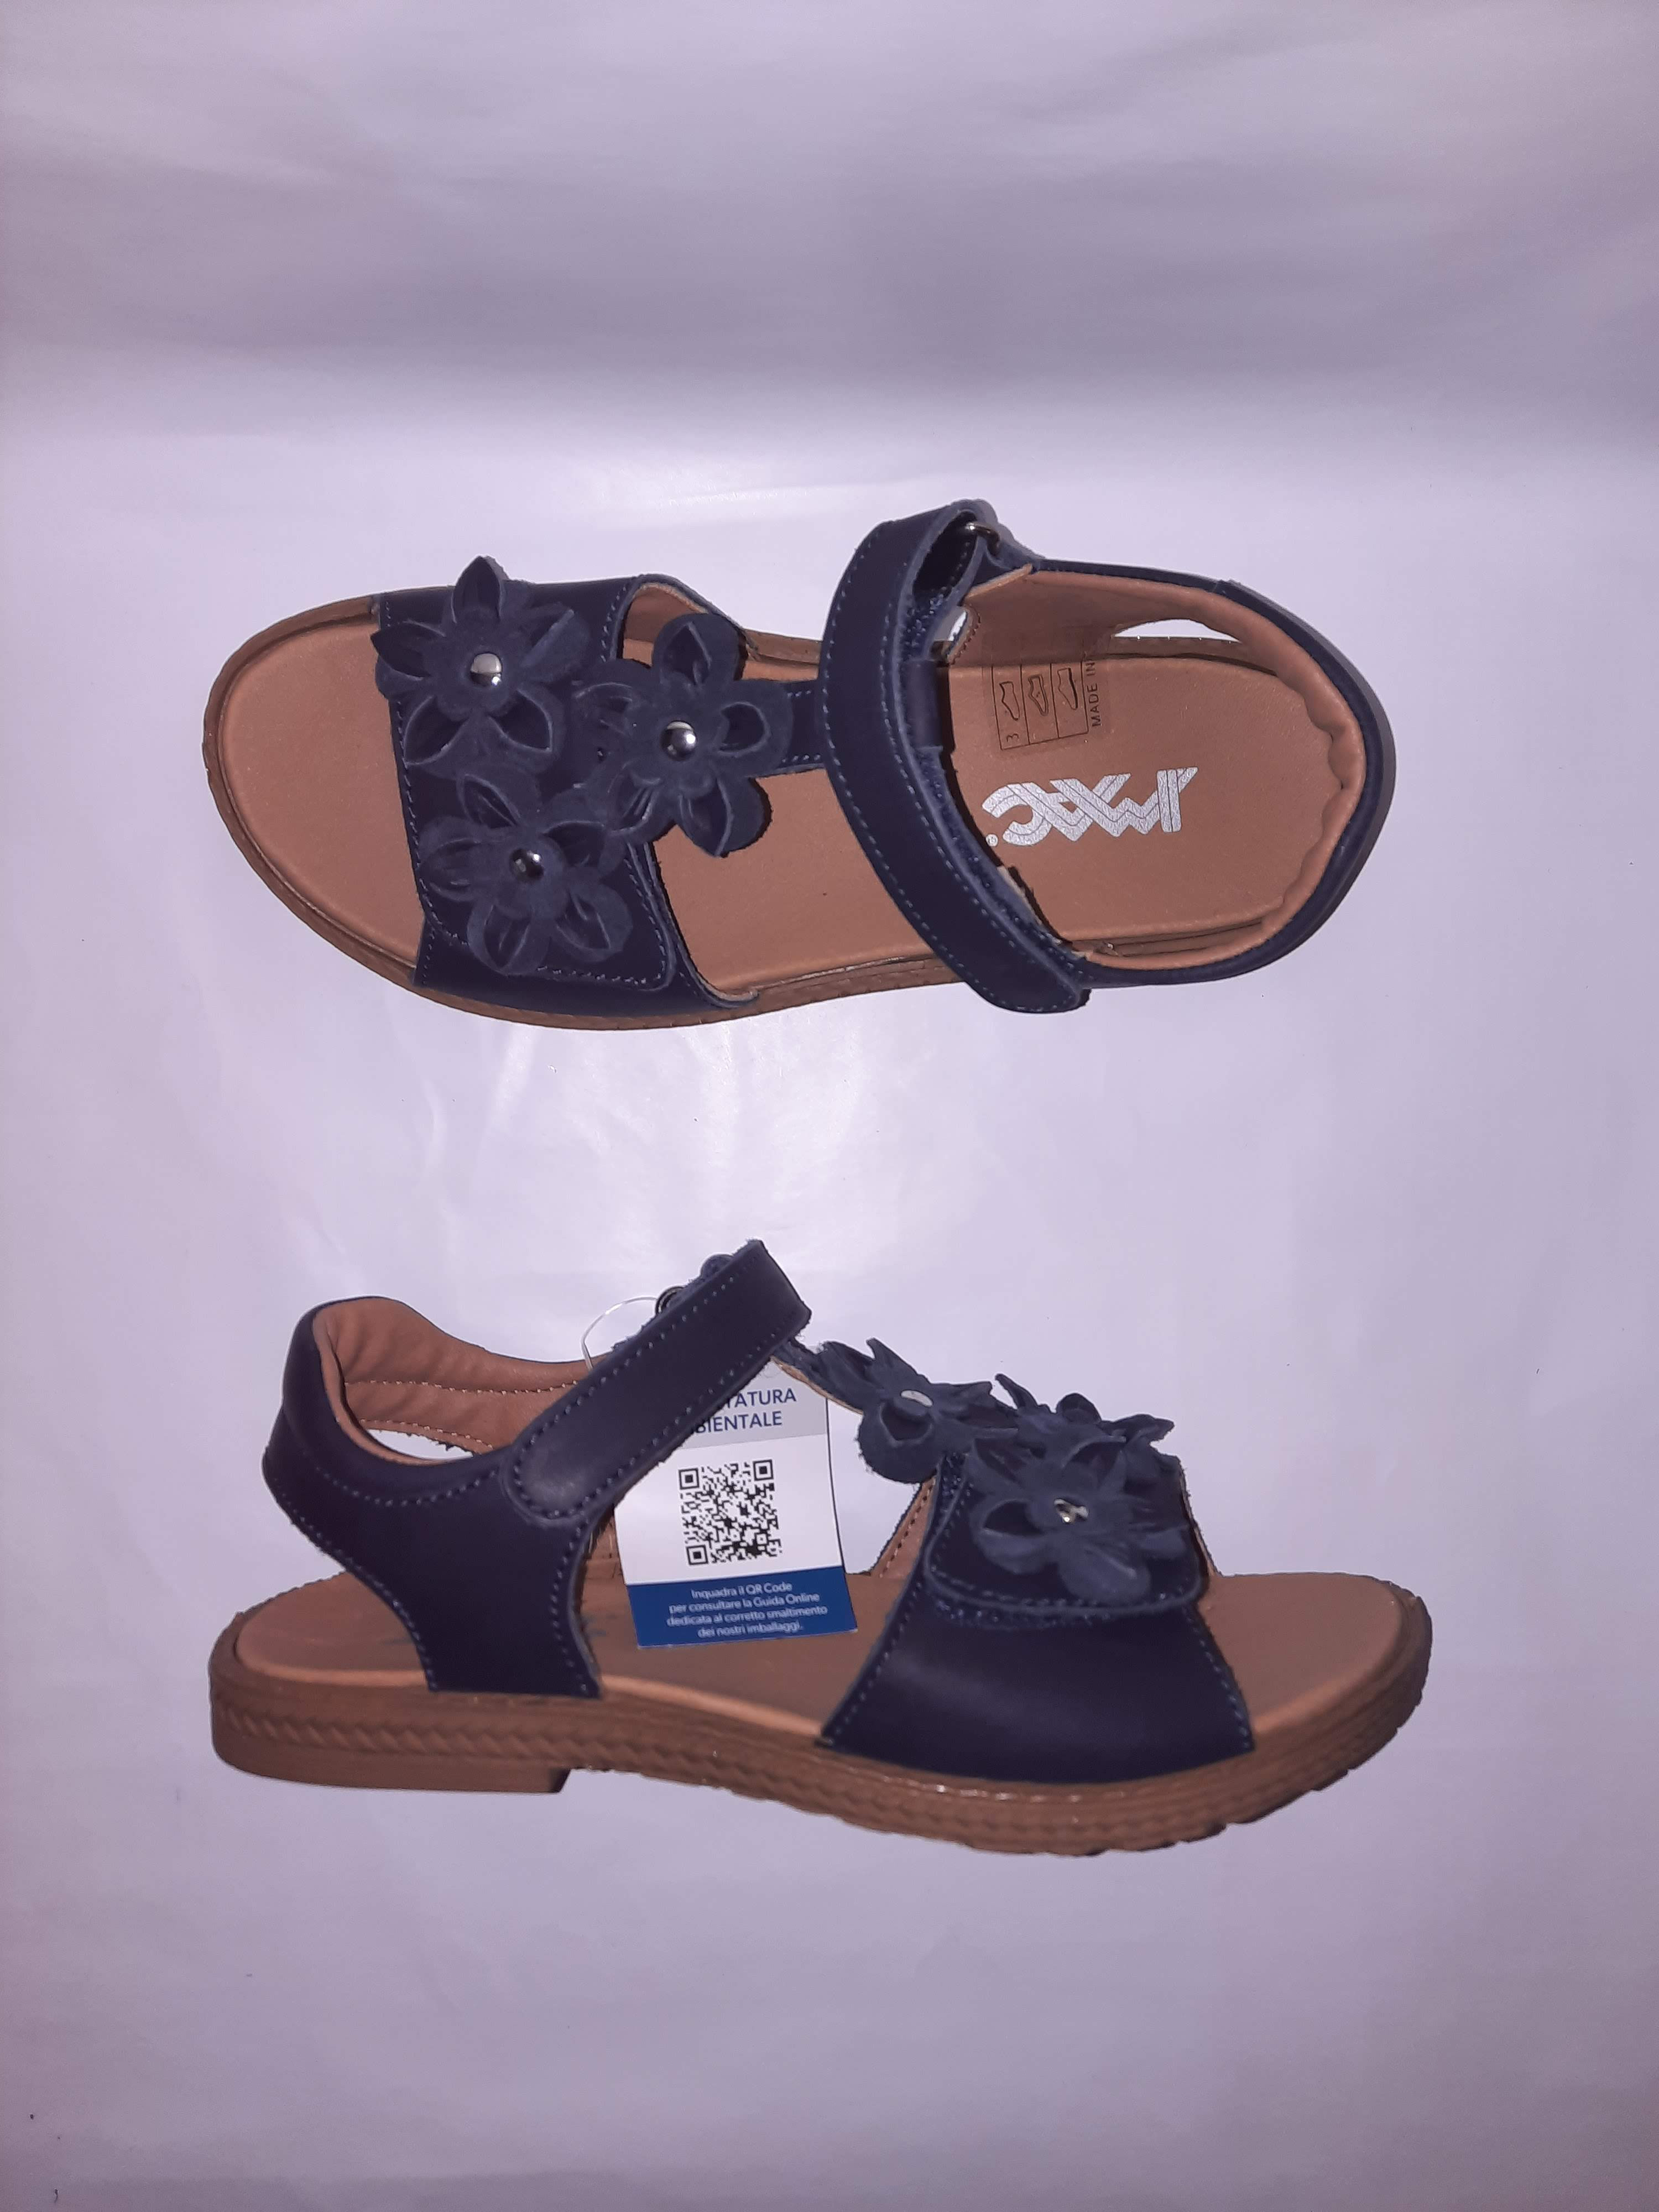 IMAC letní sandálky Amelia blue/black 377424 Velikost: 37